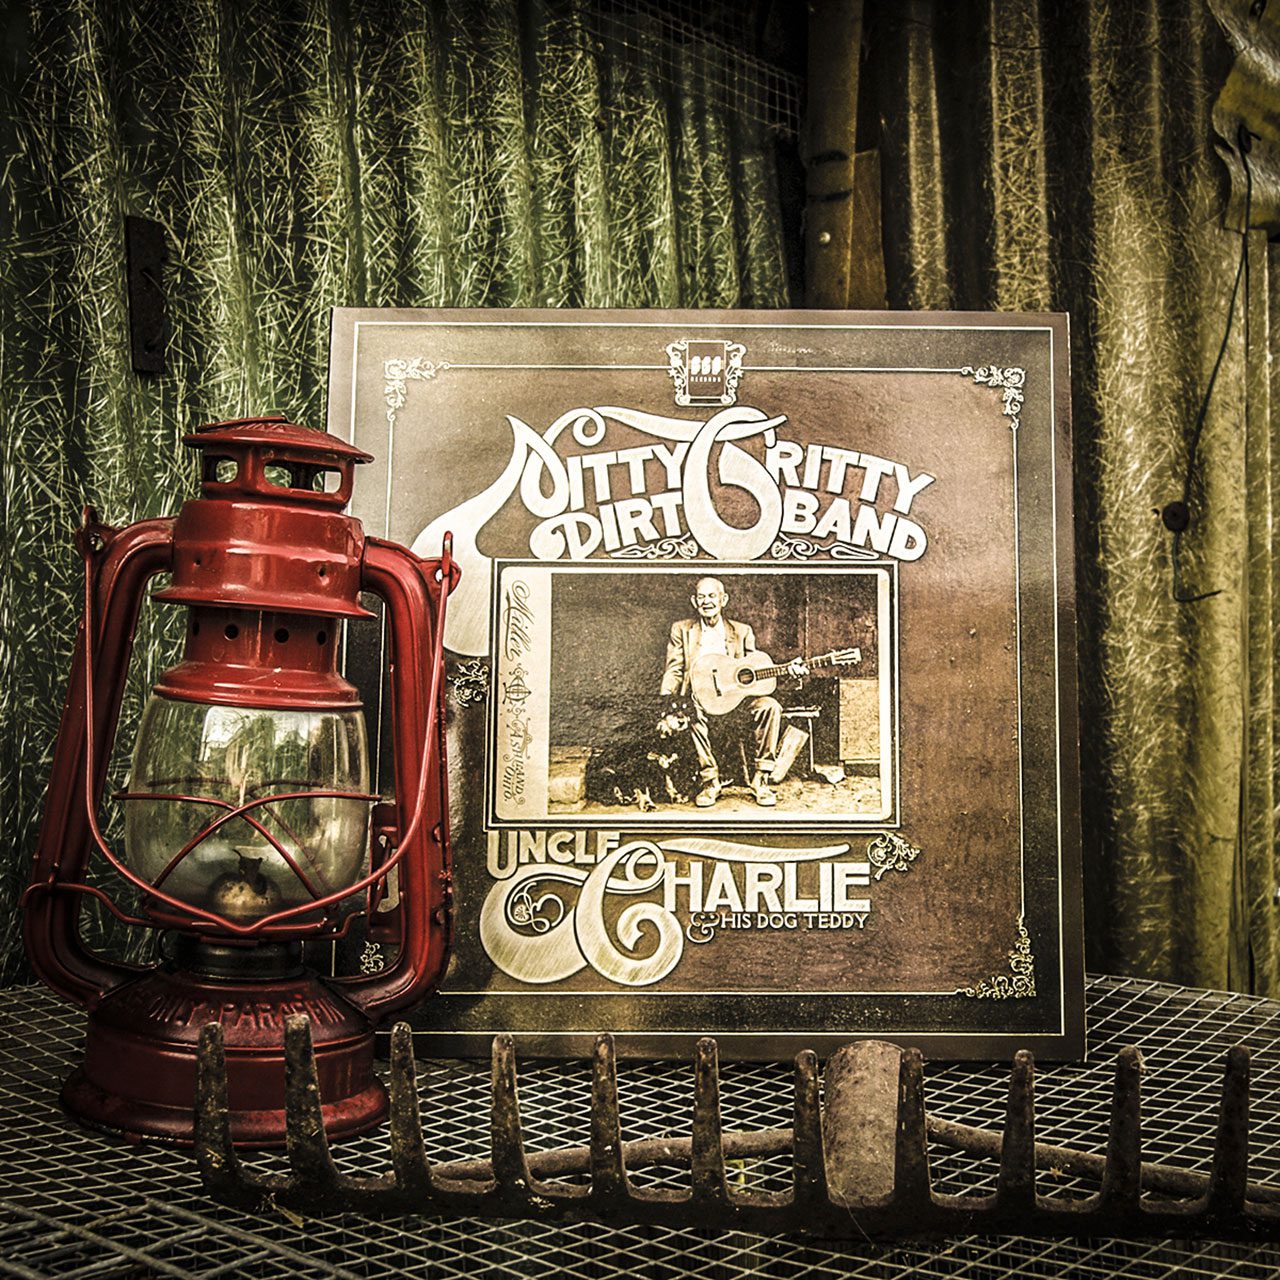 recensione dell'album della Nitty Gritty Dirt Band – Uncle Charlie & His Dog Teddy di Antonio Boschi